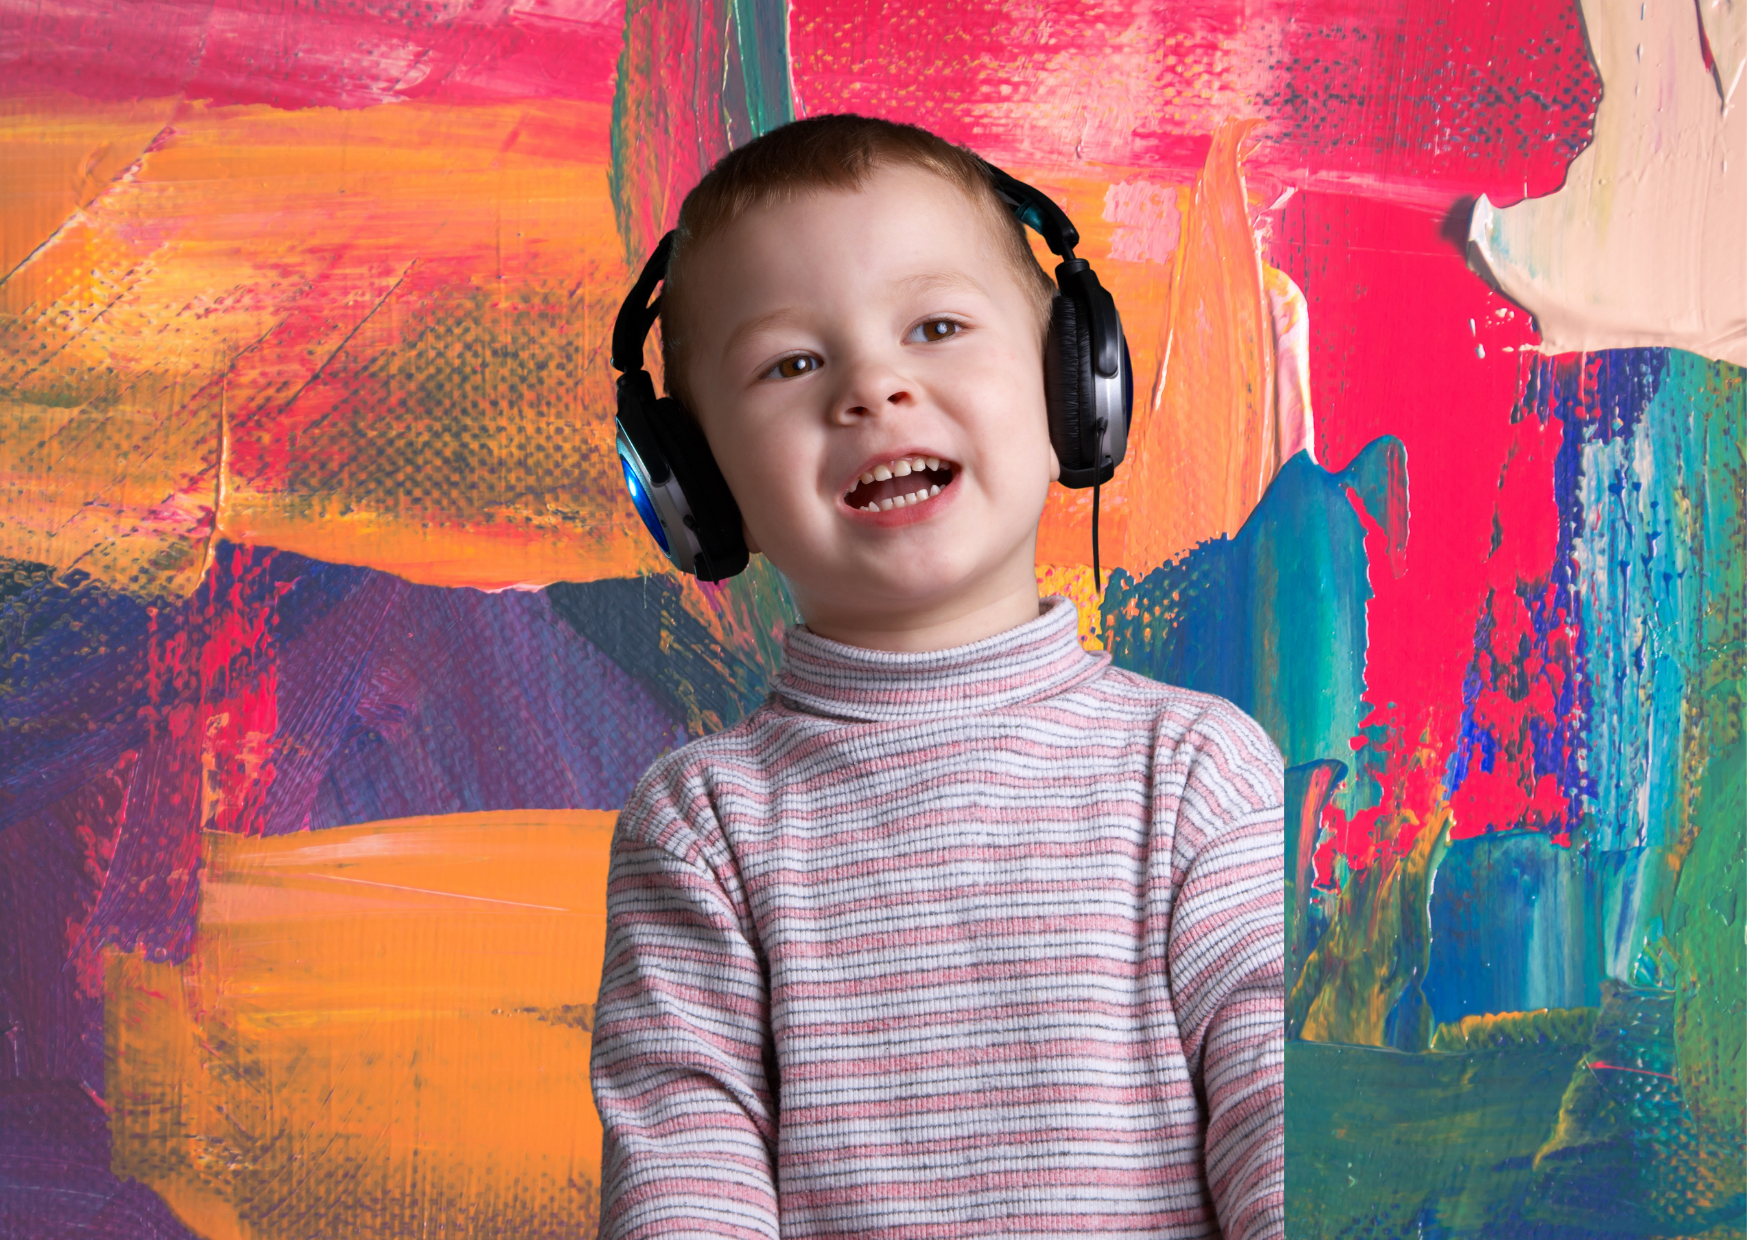 TEA e perda auditiva: existe relação entre surdez e espectro autista?